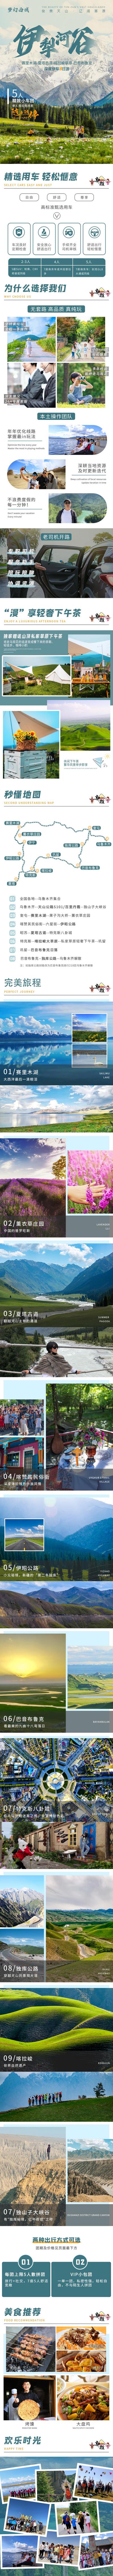 南门网 广告 海报 新疆 伊犁 旅游 专题 旅行 专题 长图 小团 雪山